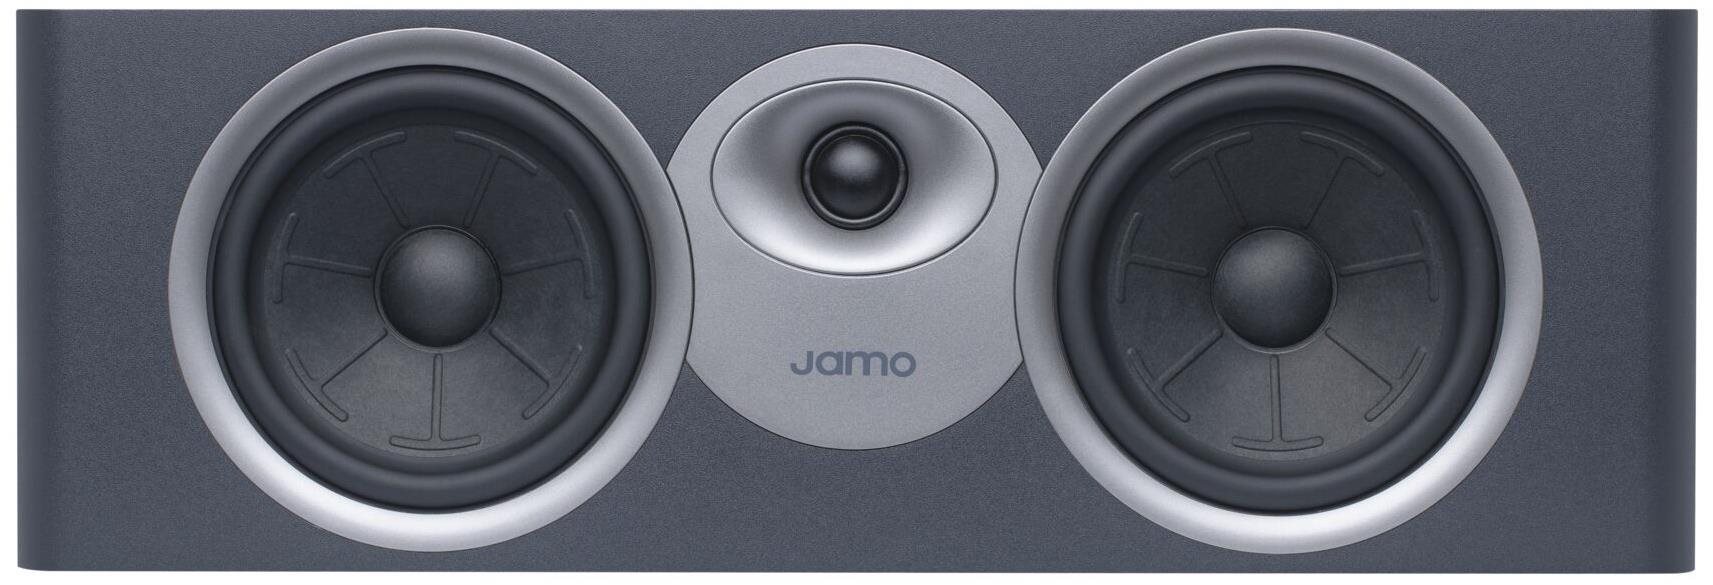 Hangszóró JAMO S7-25C sötét szürkéskék